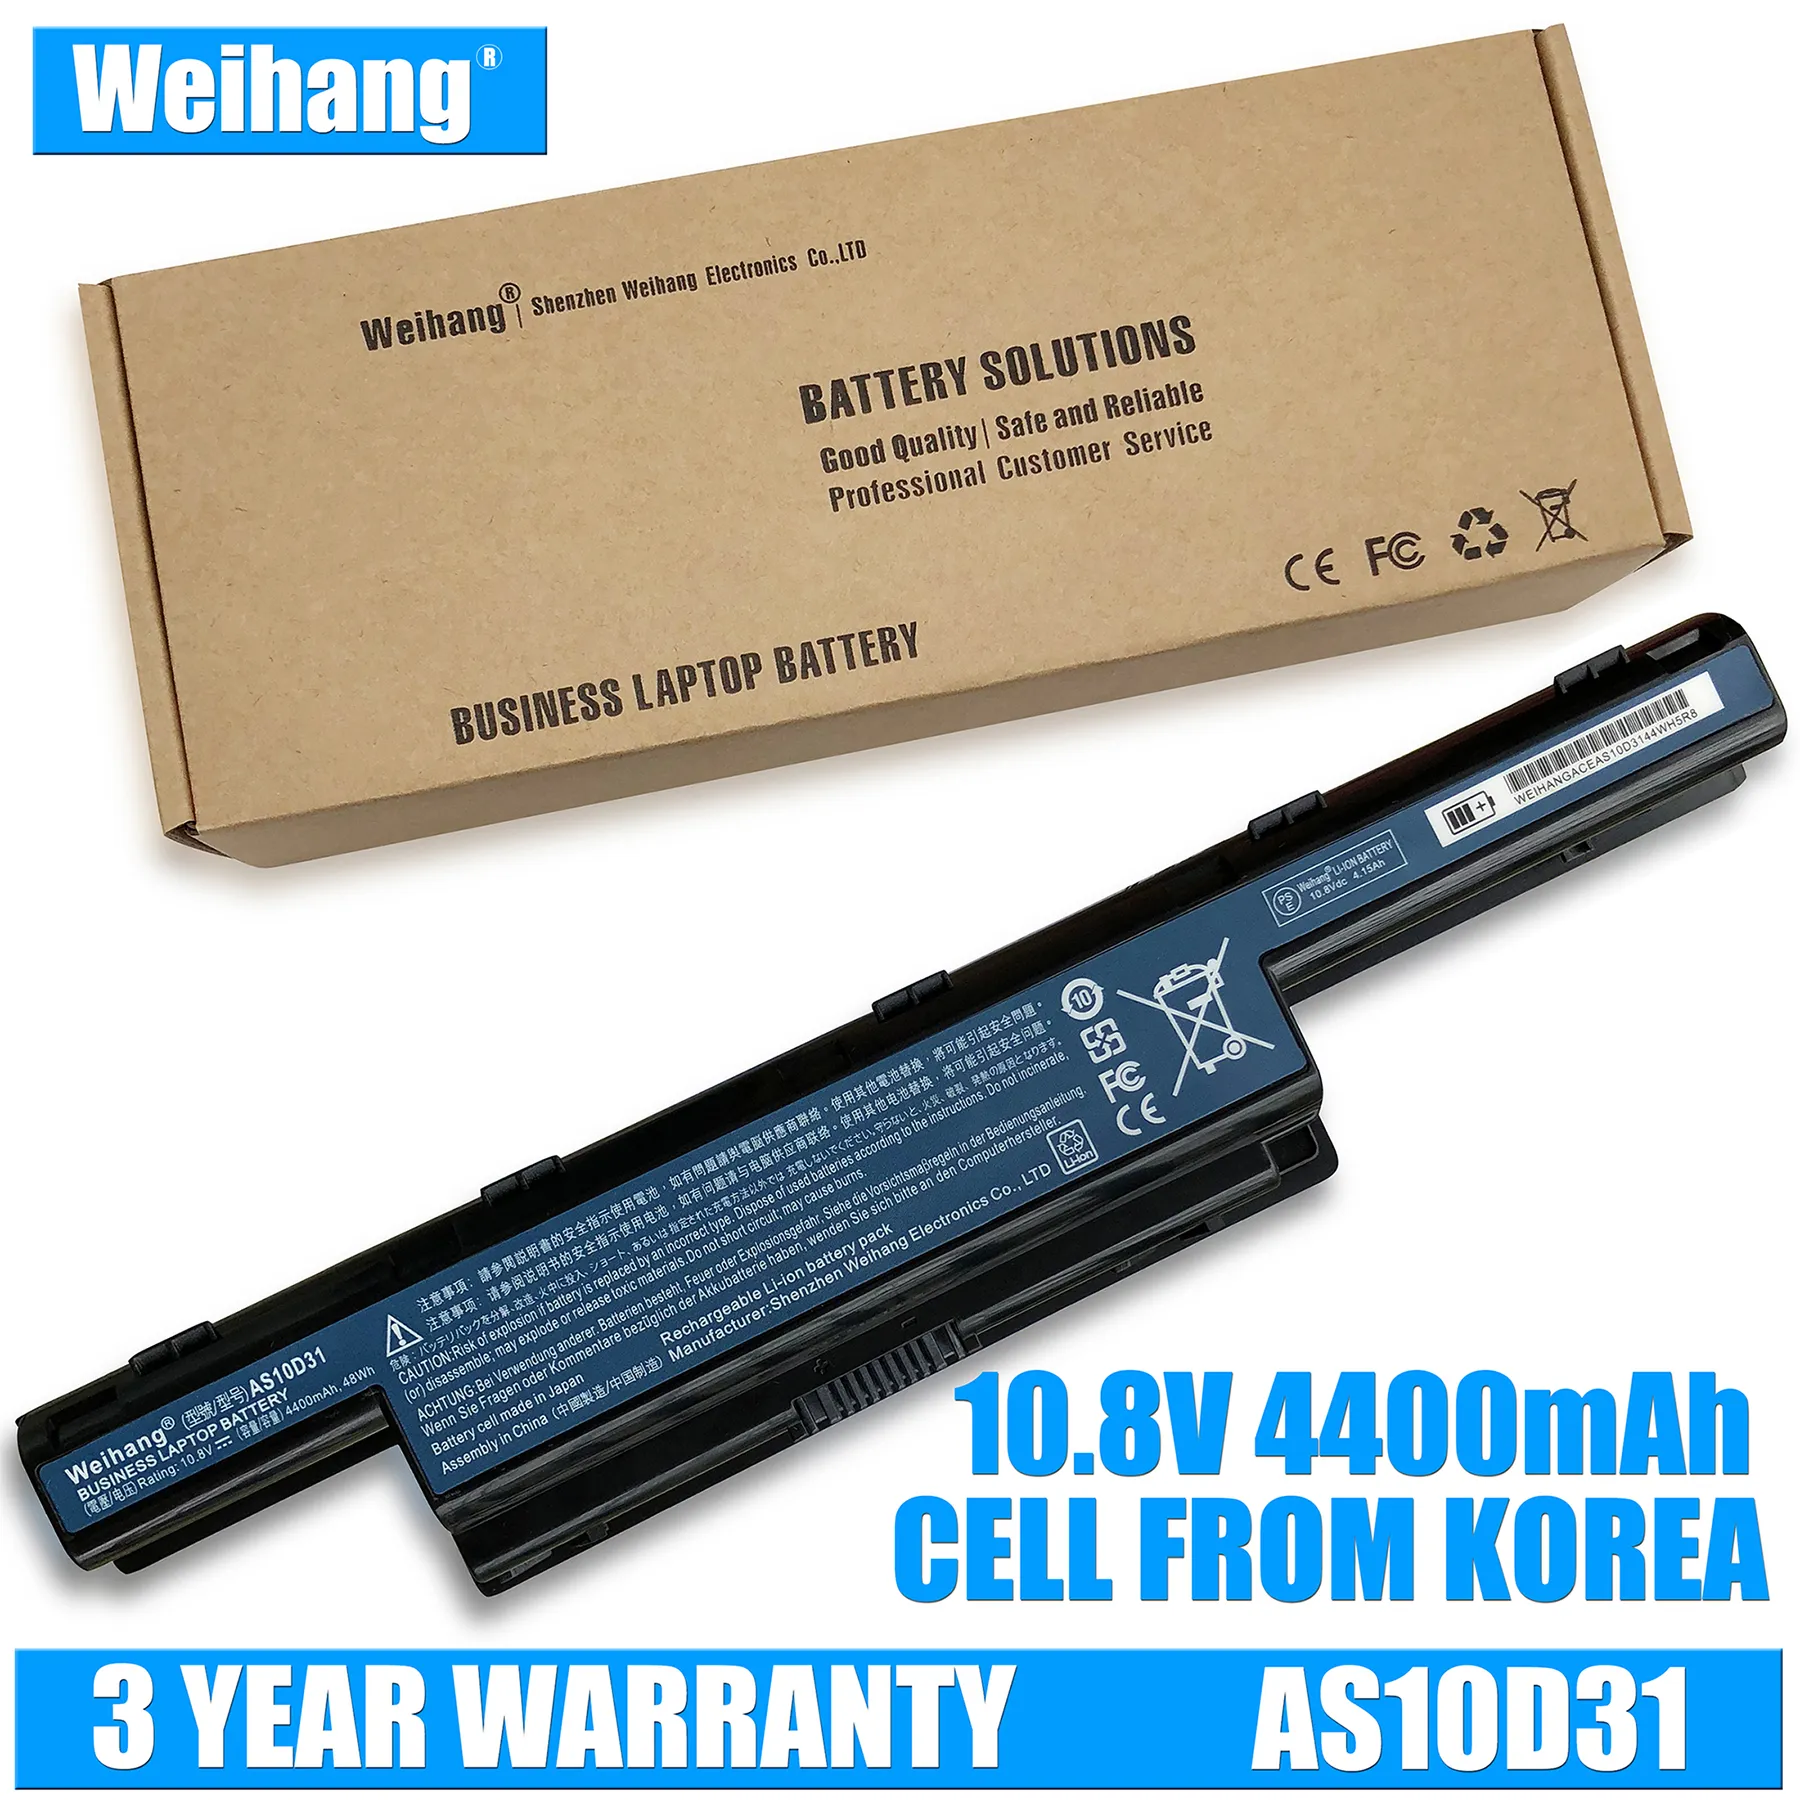 Korea Cell 4400MAH Bateria Weihang dla AS10D31 AS10D51 AS10D61 AS10D41 AS10D71 dla Acer Aspire 4741 5552G 5742 5750g 5741g